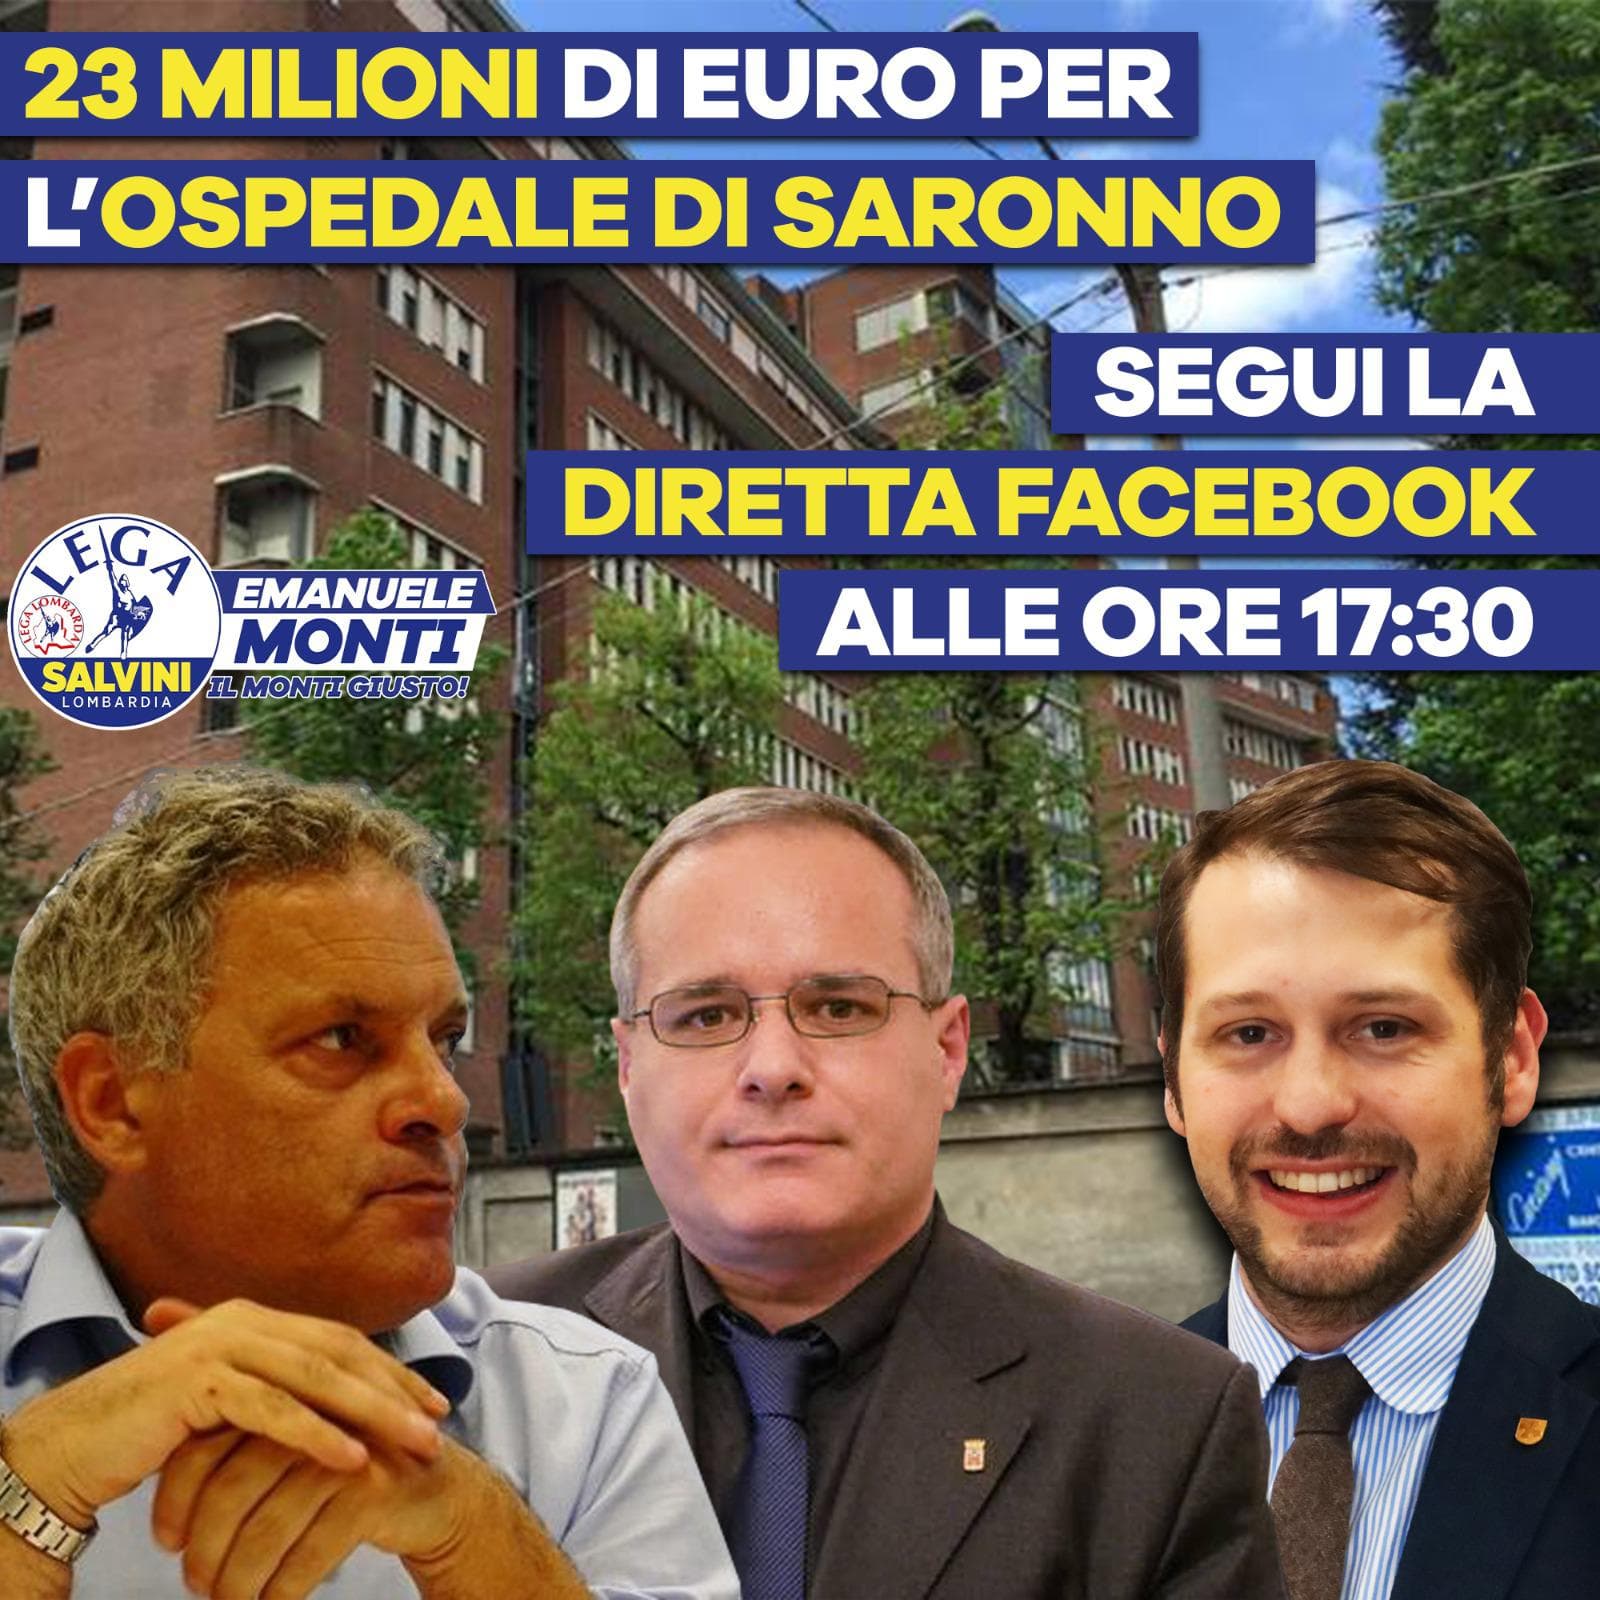 Saronno, per l'Ospedale Regione Lombardia stanzia 23 milioni